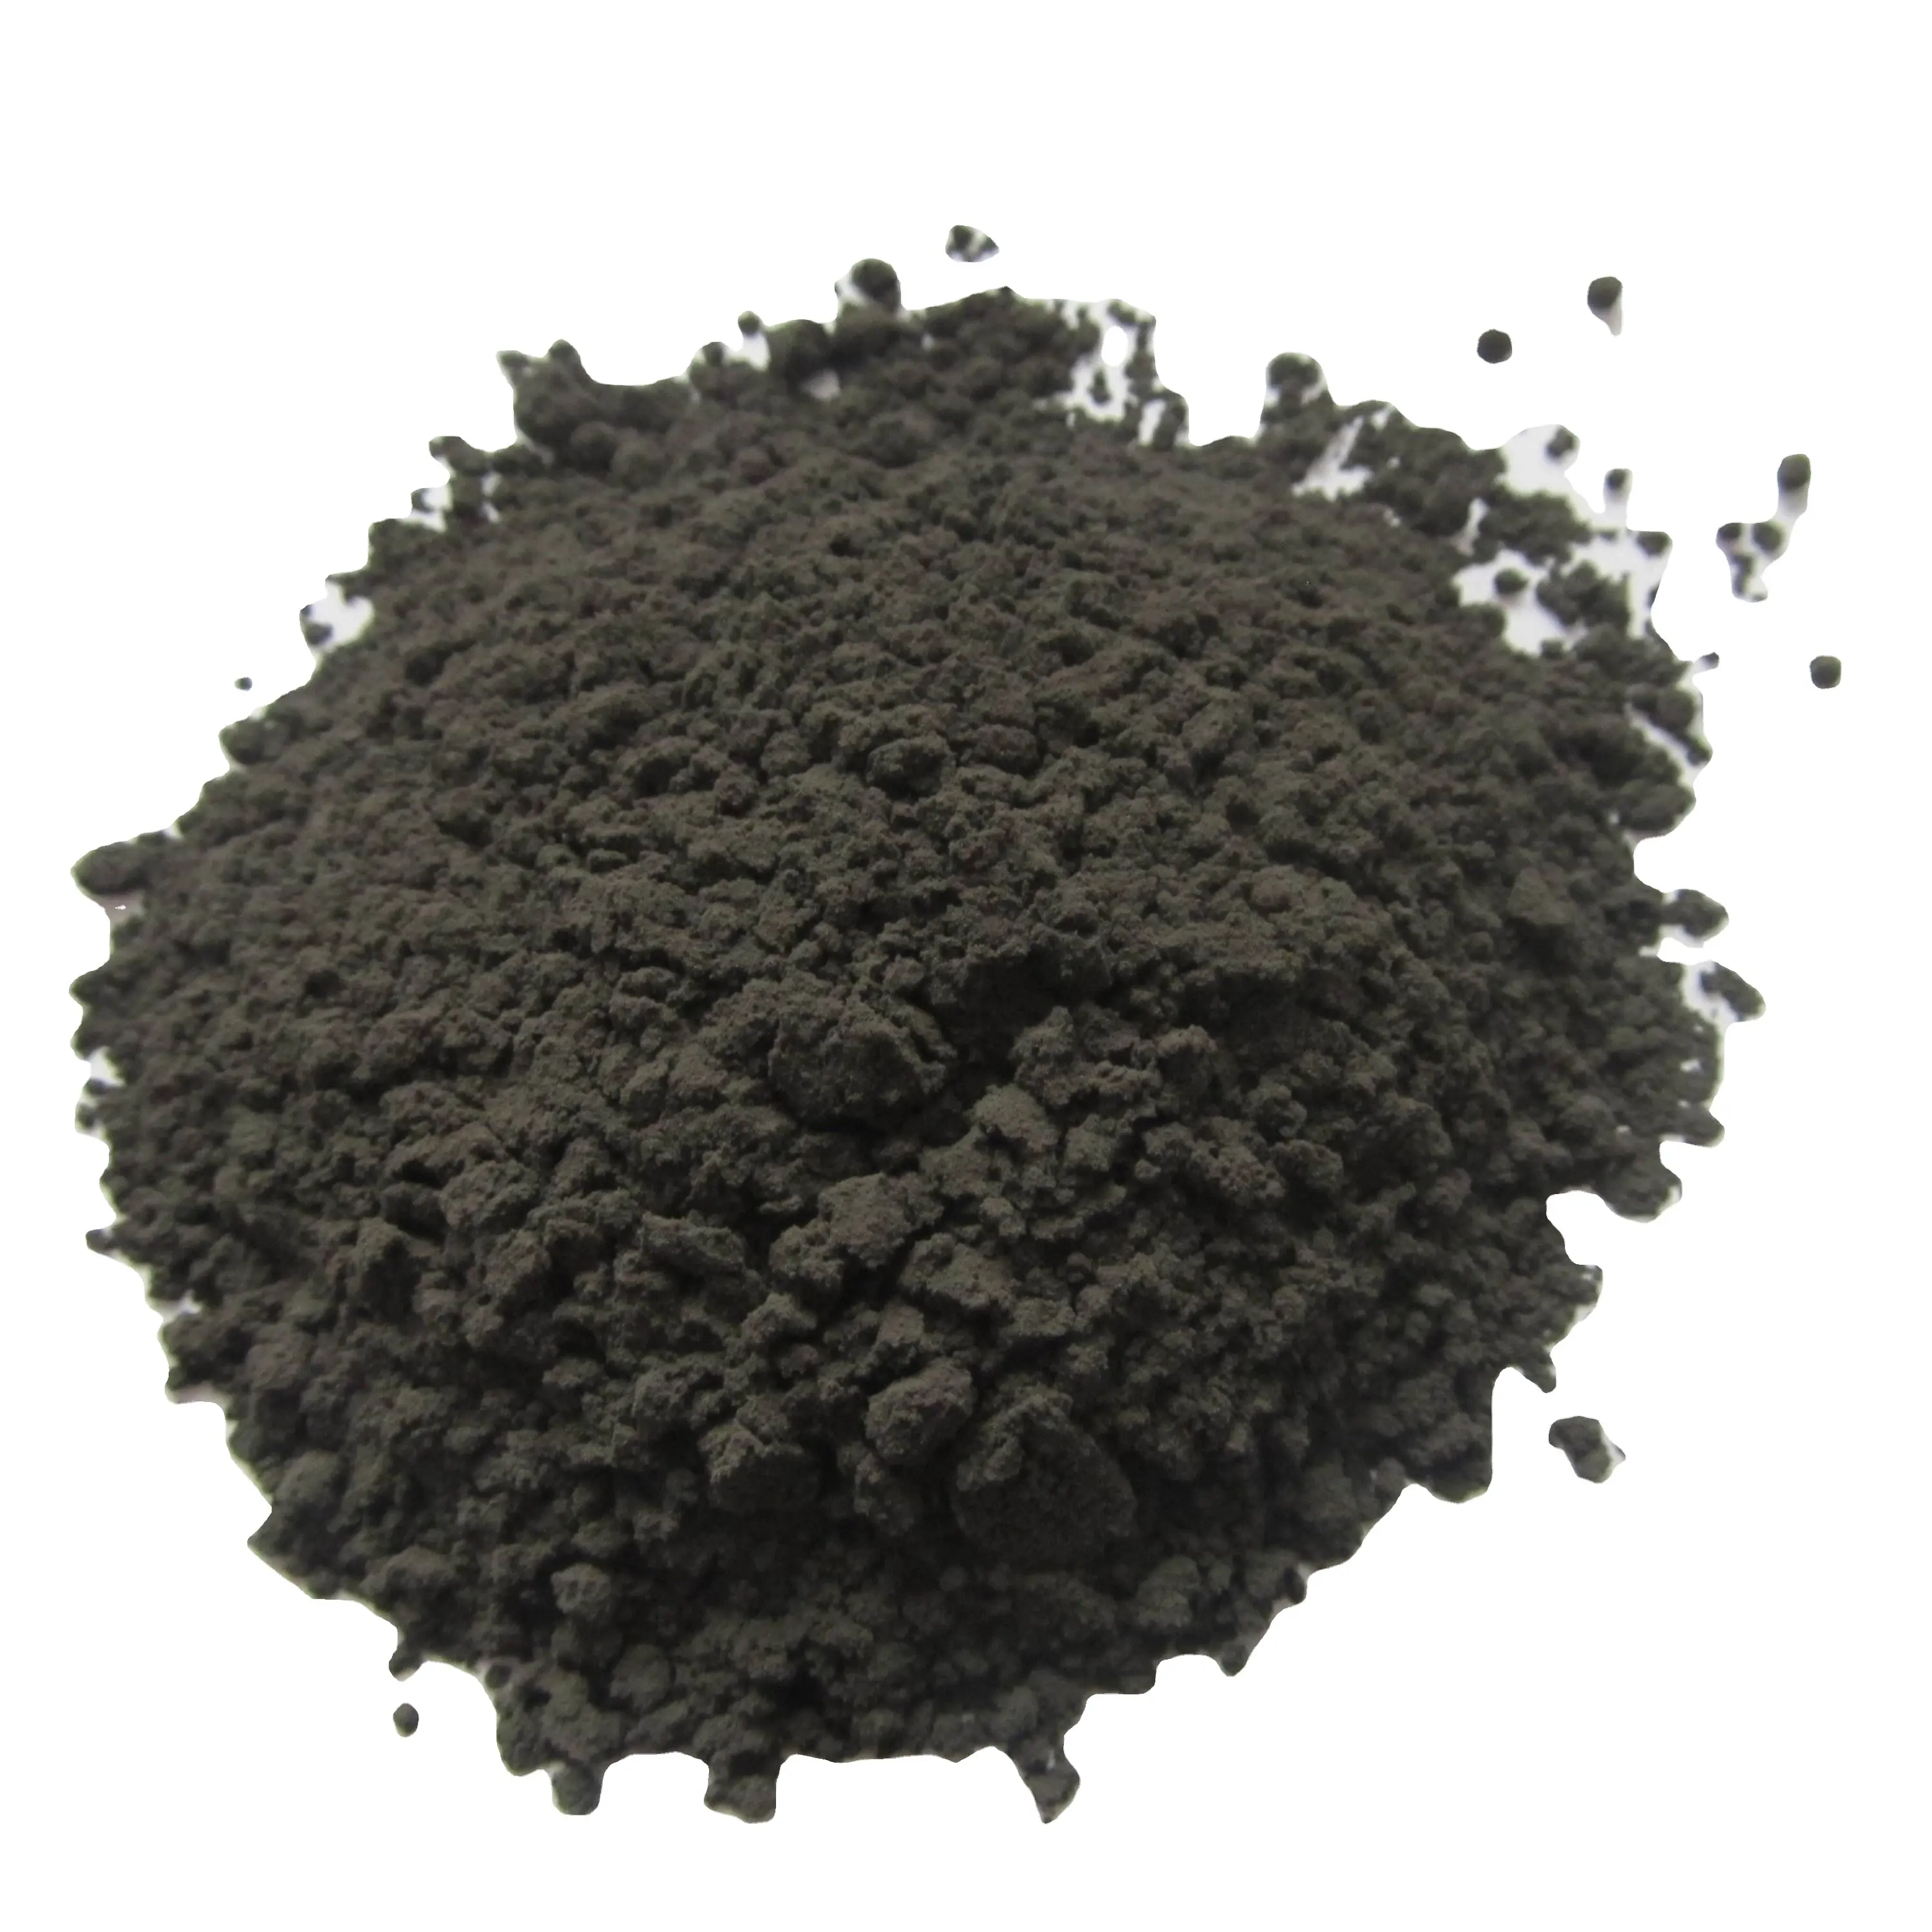 Polvo de tungsteno 99.95% puro, polvo de tungsteno de alta pureza, disponible